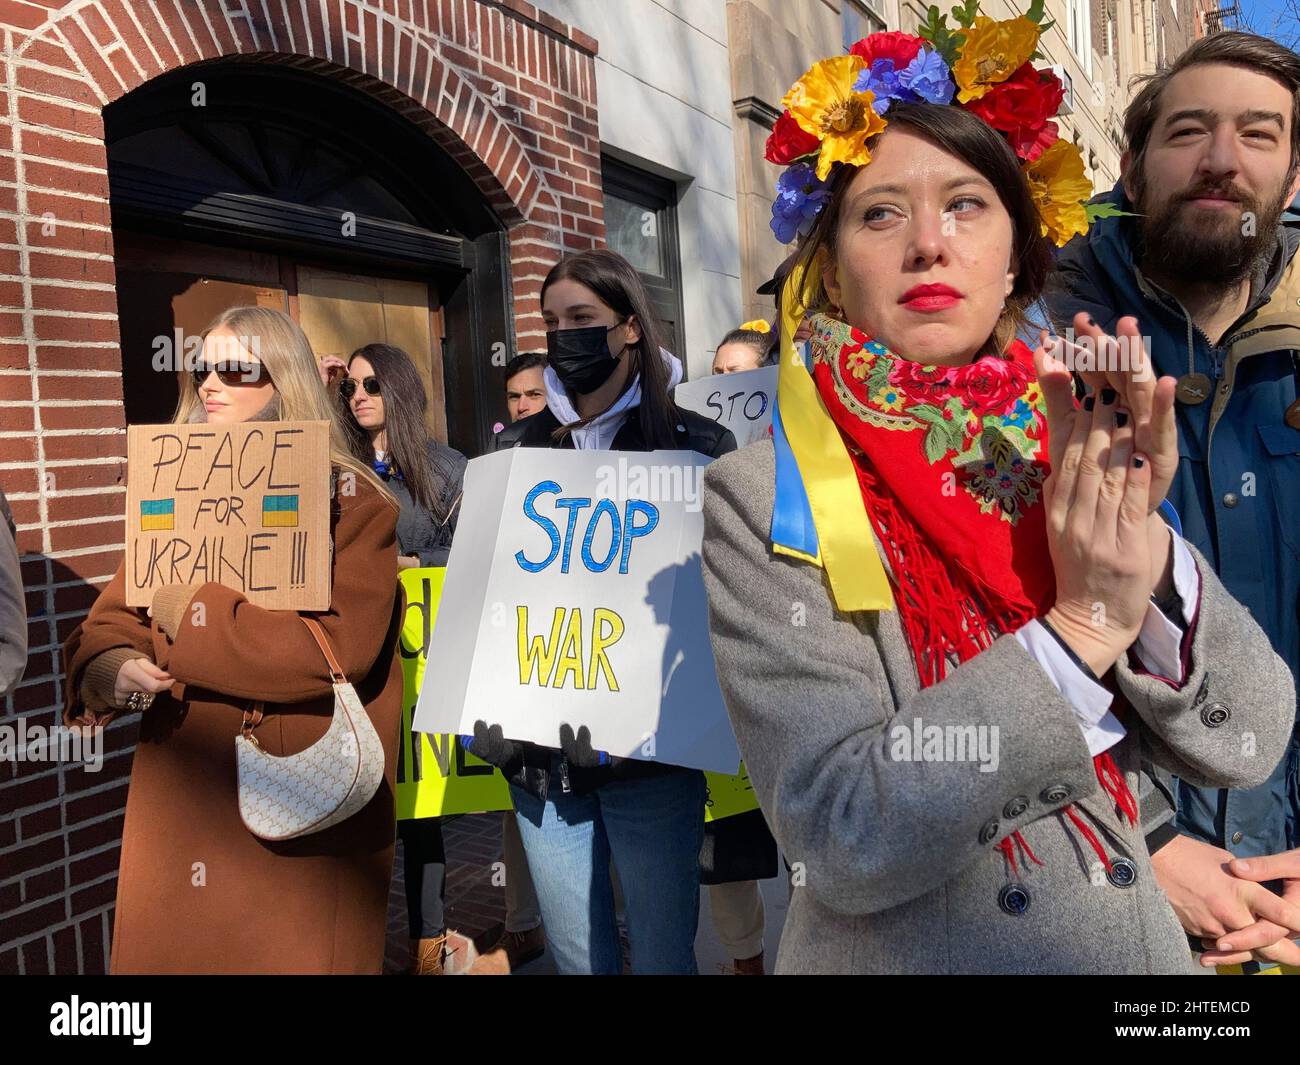 Mitglieder der LGBTQ+-Gemeinschaft, ihre Unterstützer und Ukrainisch-Amerikaner protestieren gegen die russische Invasion und zeigen am Samstag, 26. Februar 2022, Unterstützung für die Bürger der Ukraine vor dem Stonewall Inn in Greenwich Village in New York. (© Frances M. Roberts) Stockfoto